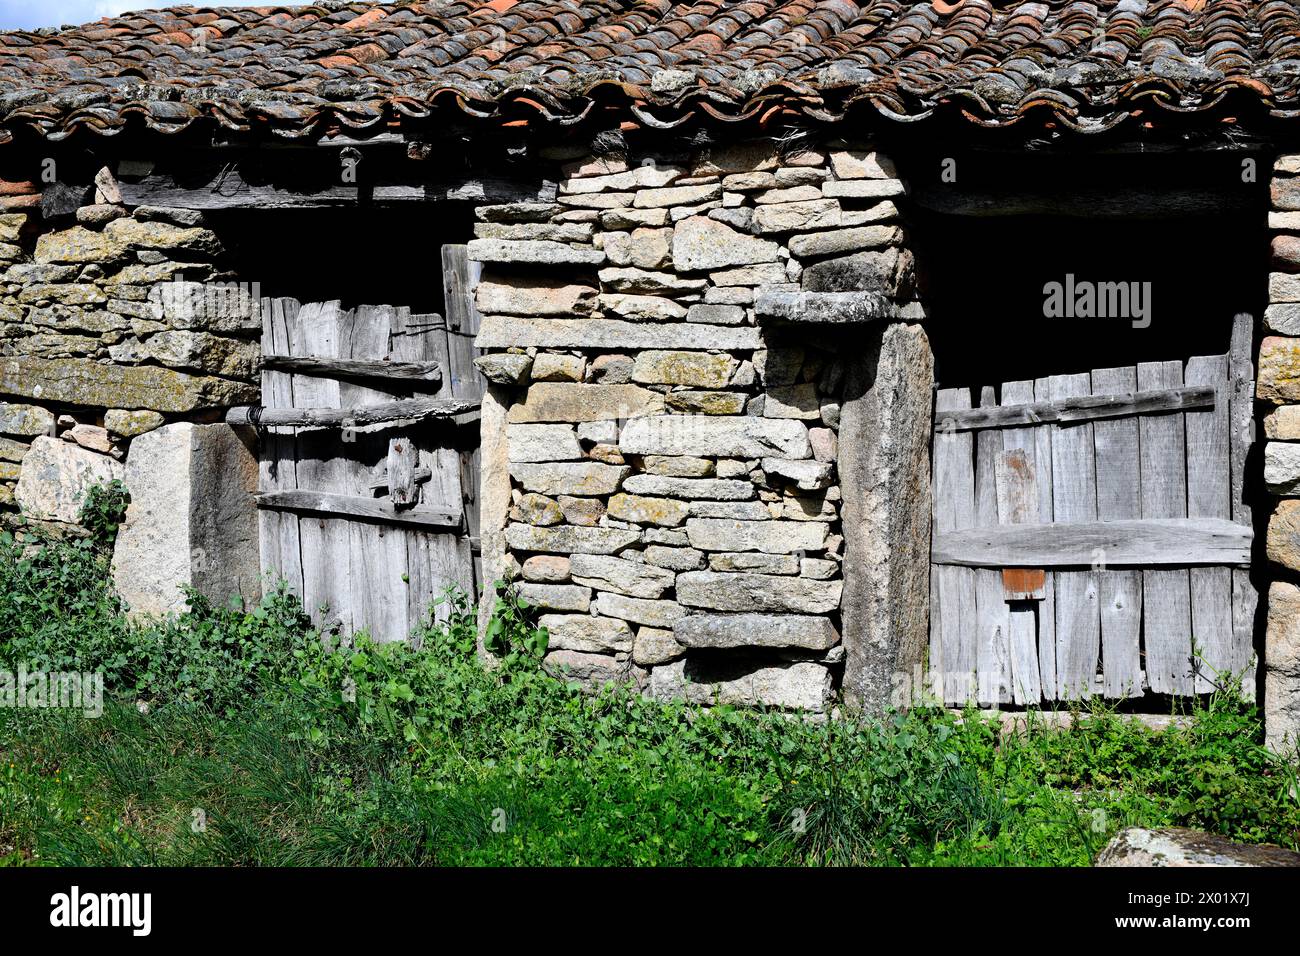 Fornillos de Fermoselle, Traditional architecture. Sayago, Arribes del Duero Natural Park, Zamora province, Castilla y Leon, Spain. Stock Photo